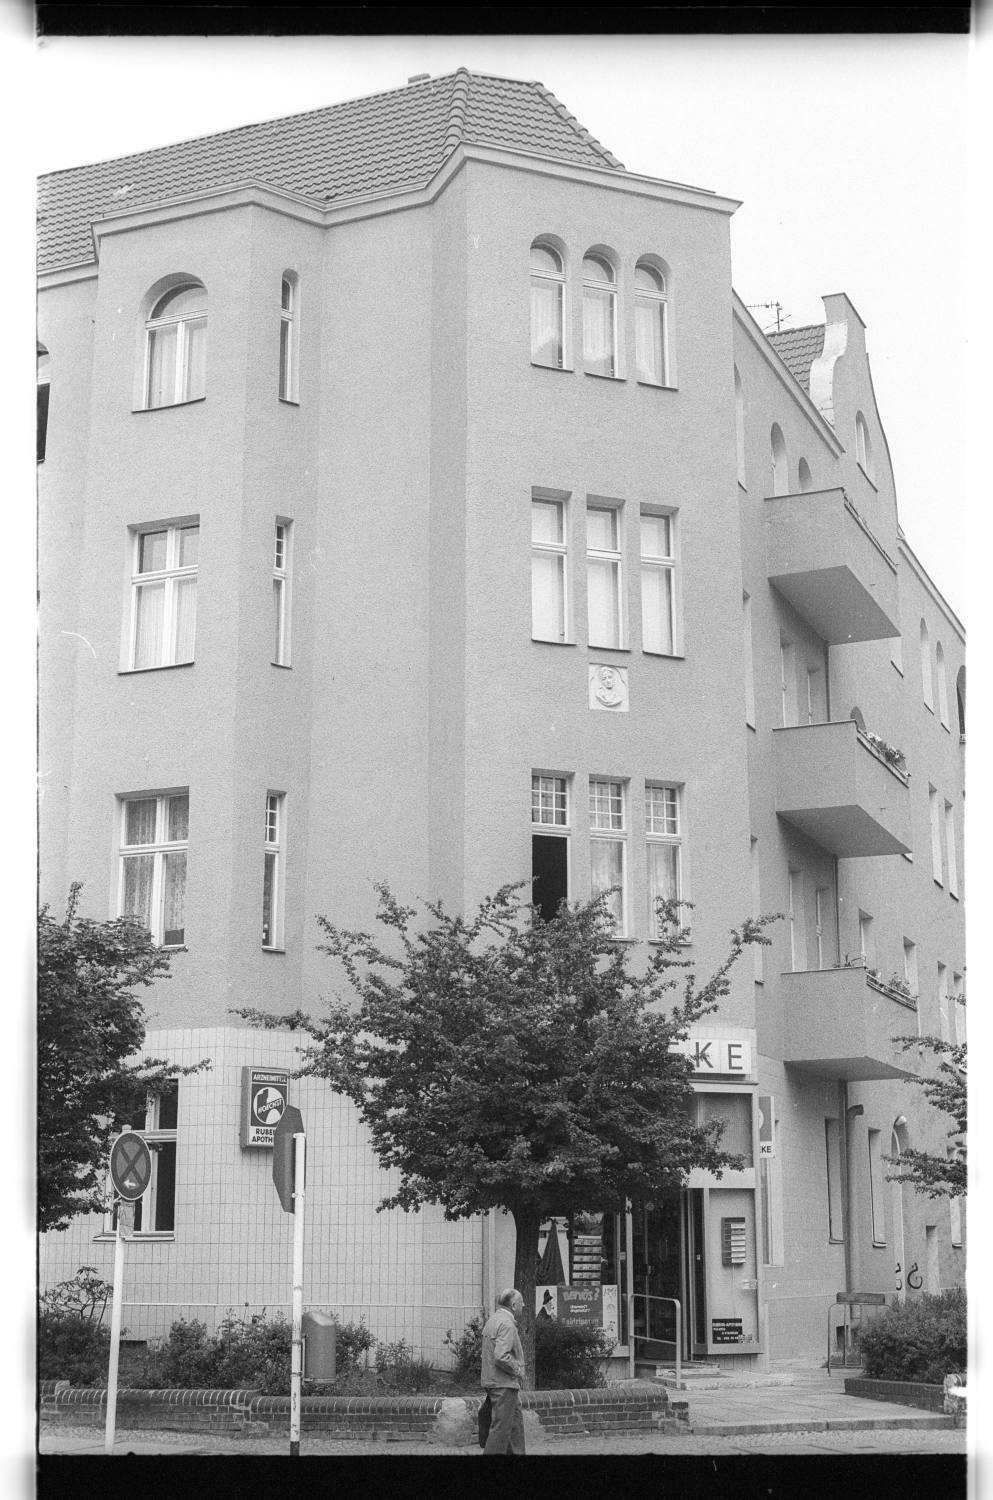 Kleinbildnegative: Mietshaus, Beckerstraße Ecke Rubensstraße, 1979 (Museen Tempelhof-Schöneberg/Jürgen Henschel RR-F)